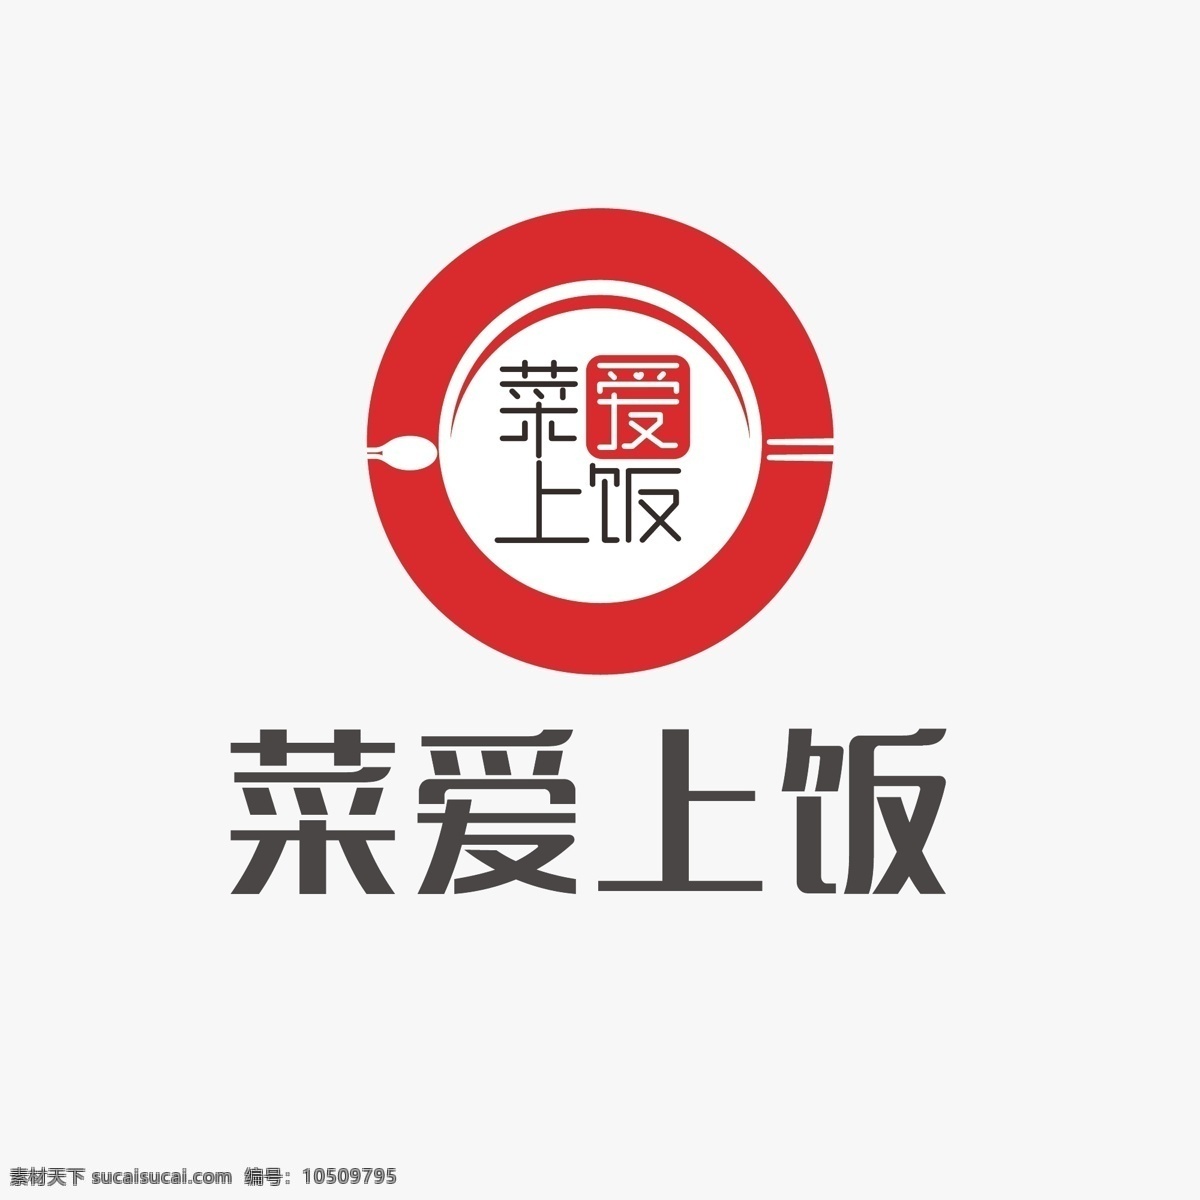 餐饮标志 菜爱上饭 餐饮logo 饭店标志 碗标志 美食标志 快餐logo 美食logo 标志 logo设计